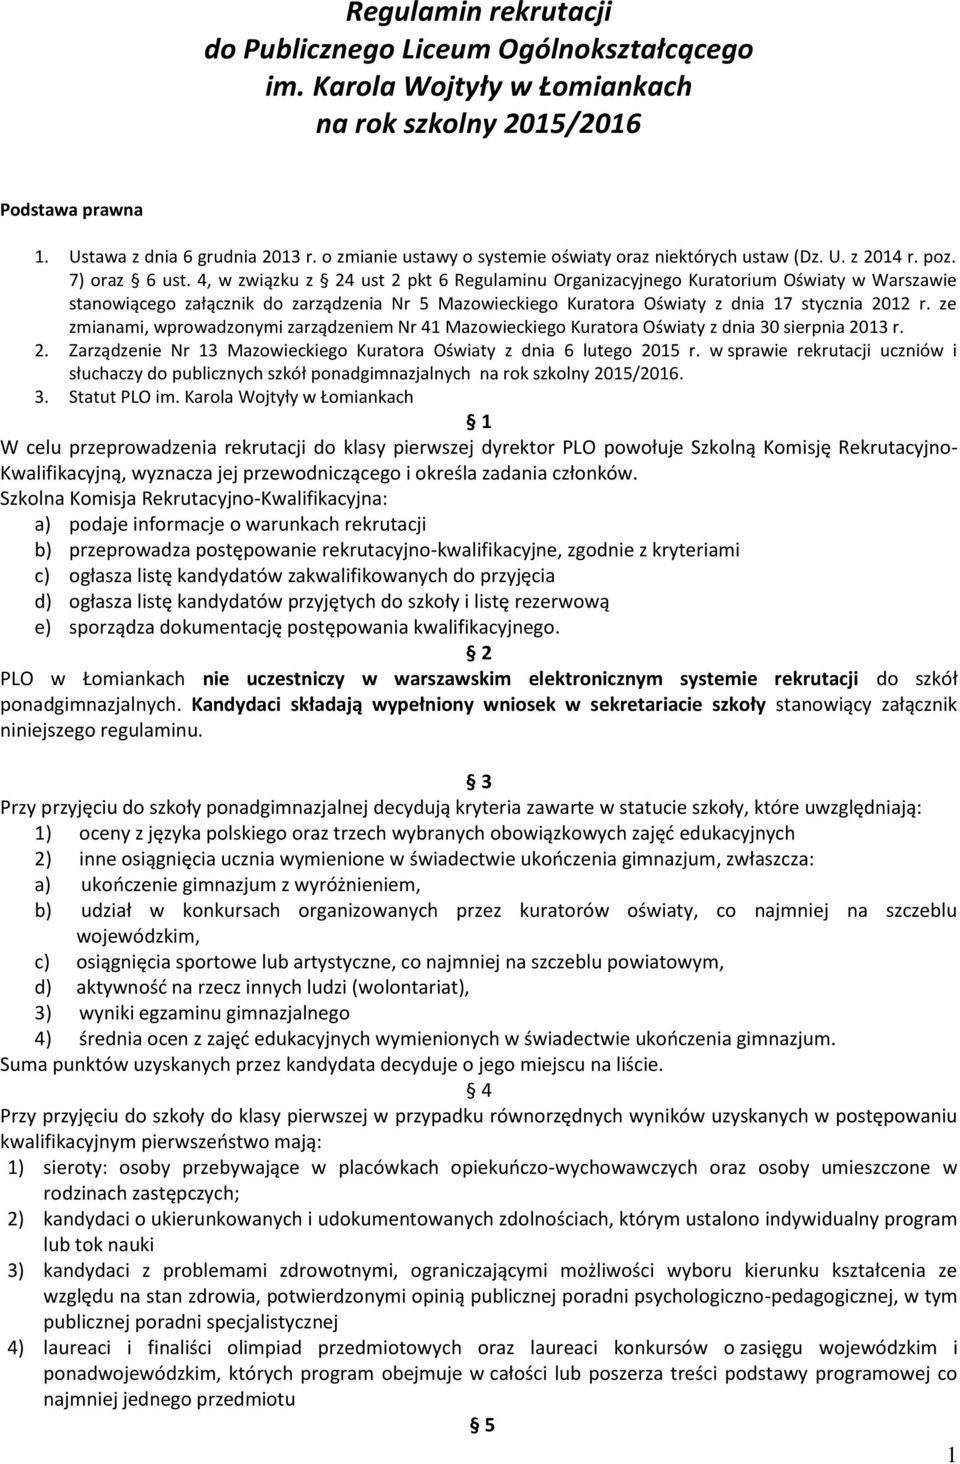 4, w związku z 24 ust 2 pkt 6 Regulaminu Organizacyjnego Kuratorium Oświaty w Warszawie stanowiącego załącznik do zarządzenia Nr 5 Mazowieckiego Kuratora Oświaty z dnia 17 stycznia 2012 r.